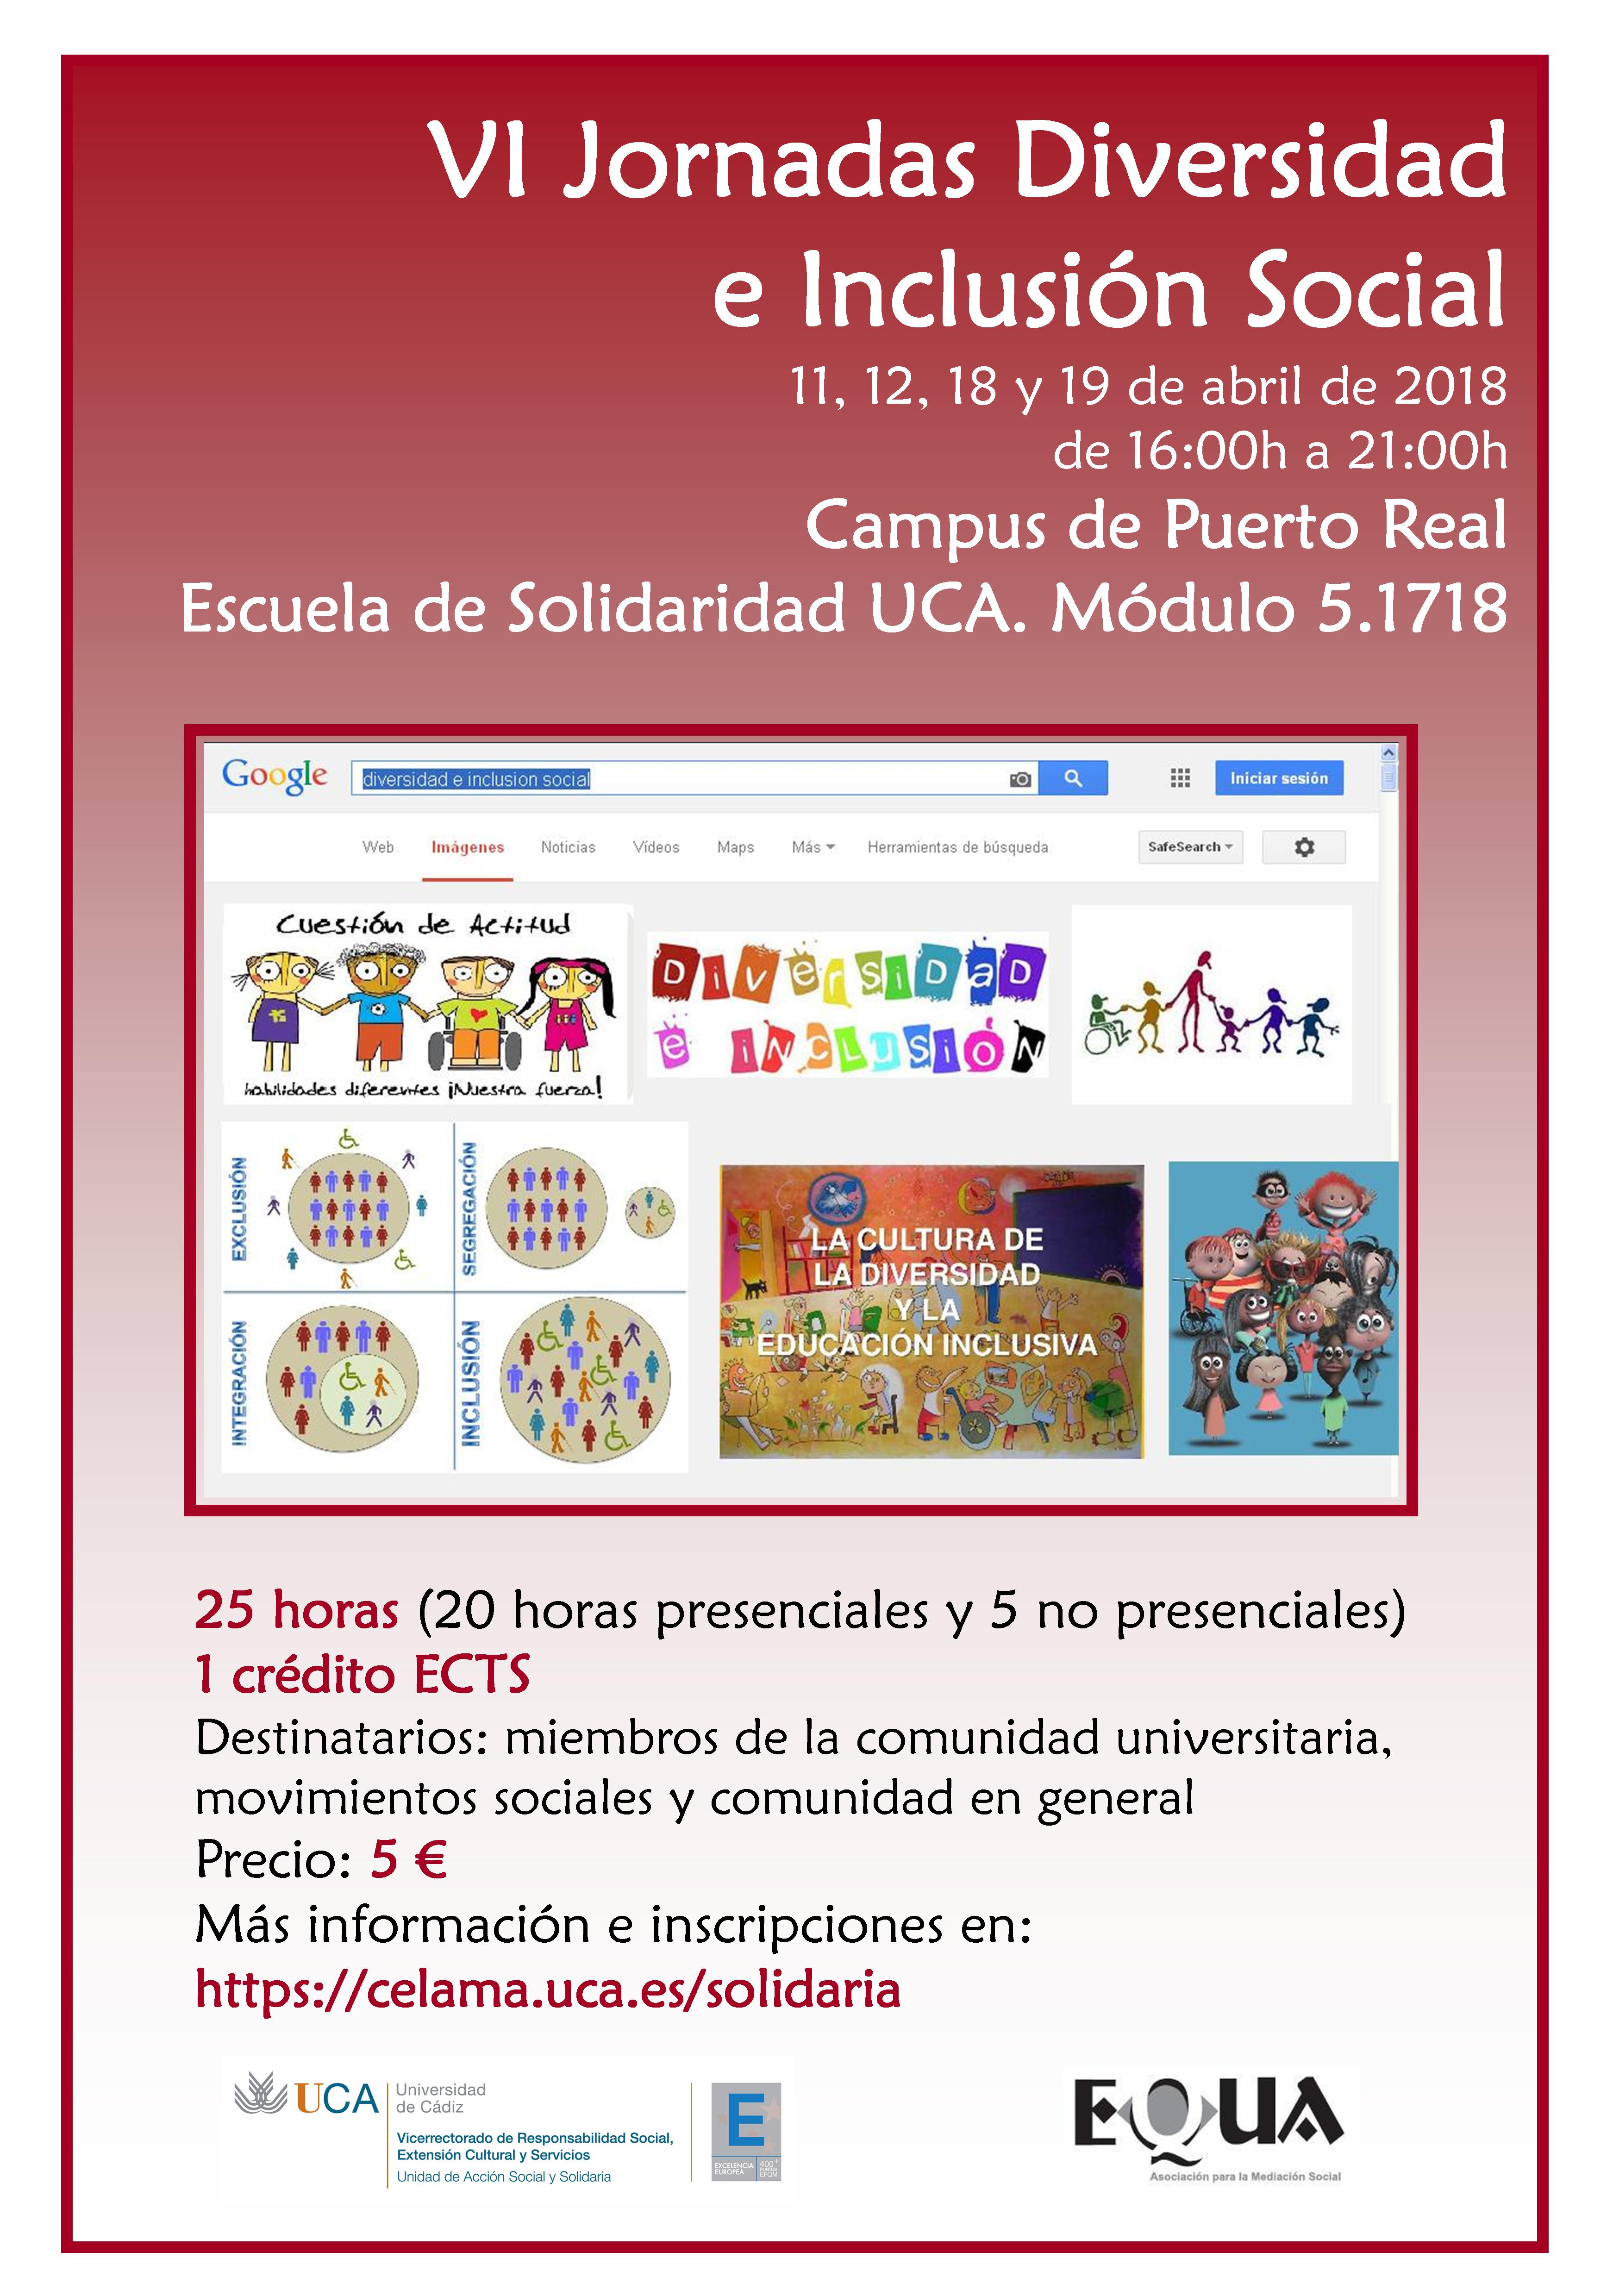 11, 12, 18 y 19 de abril. Campus de Puerto Real. Escuela de Solidaridad UCA. Jornadas Diversidad e Inclusión Social.